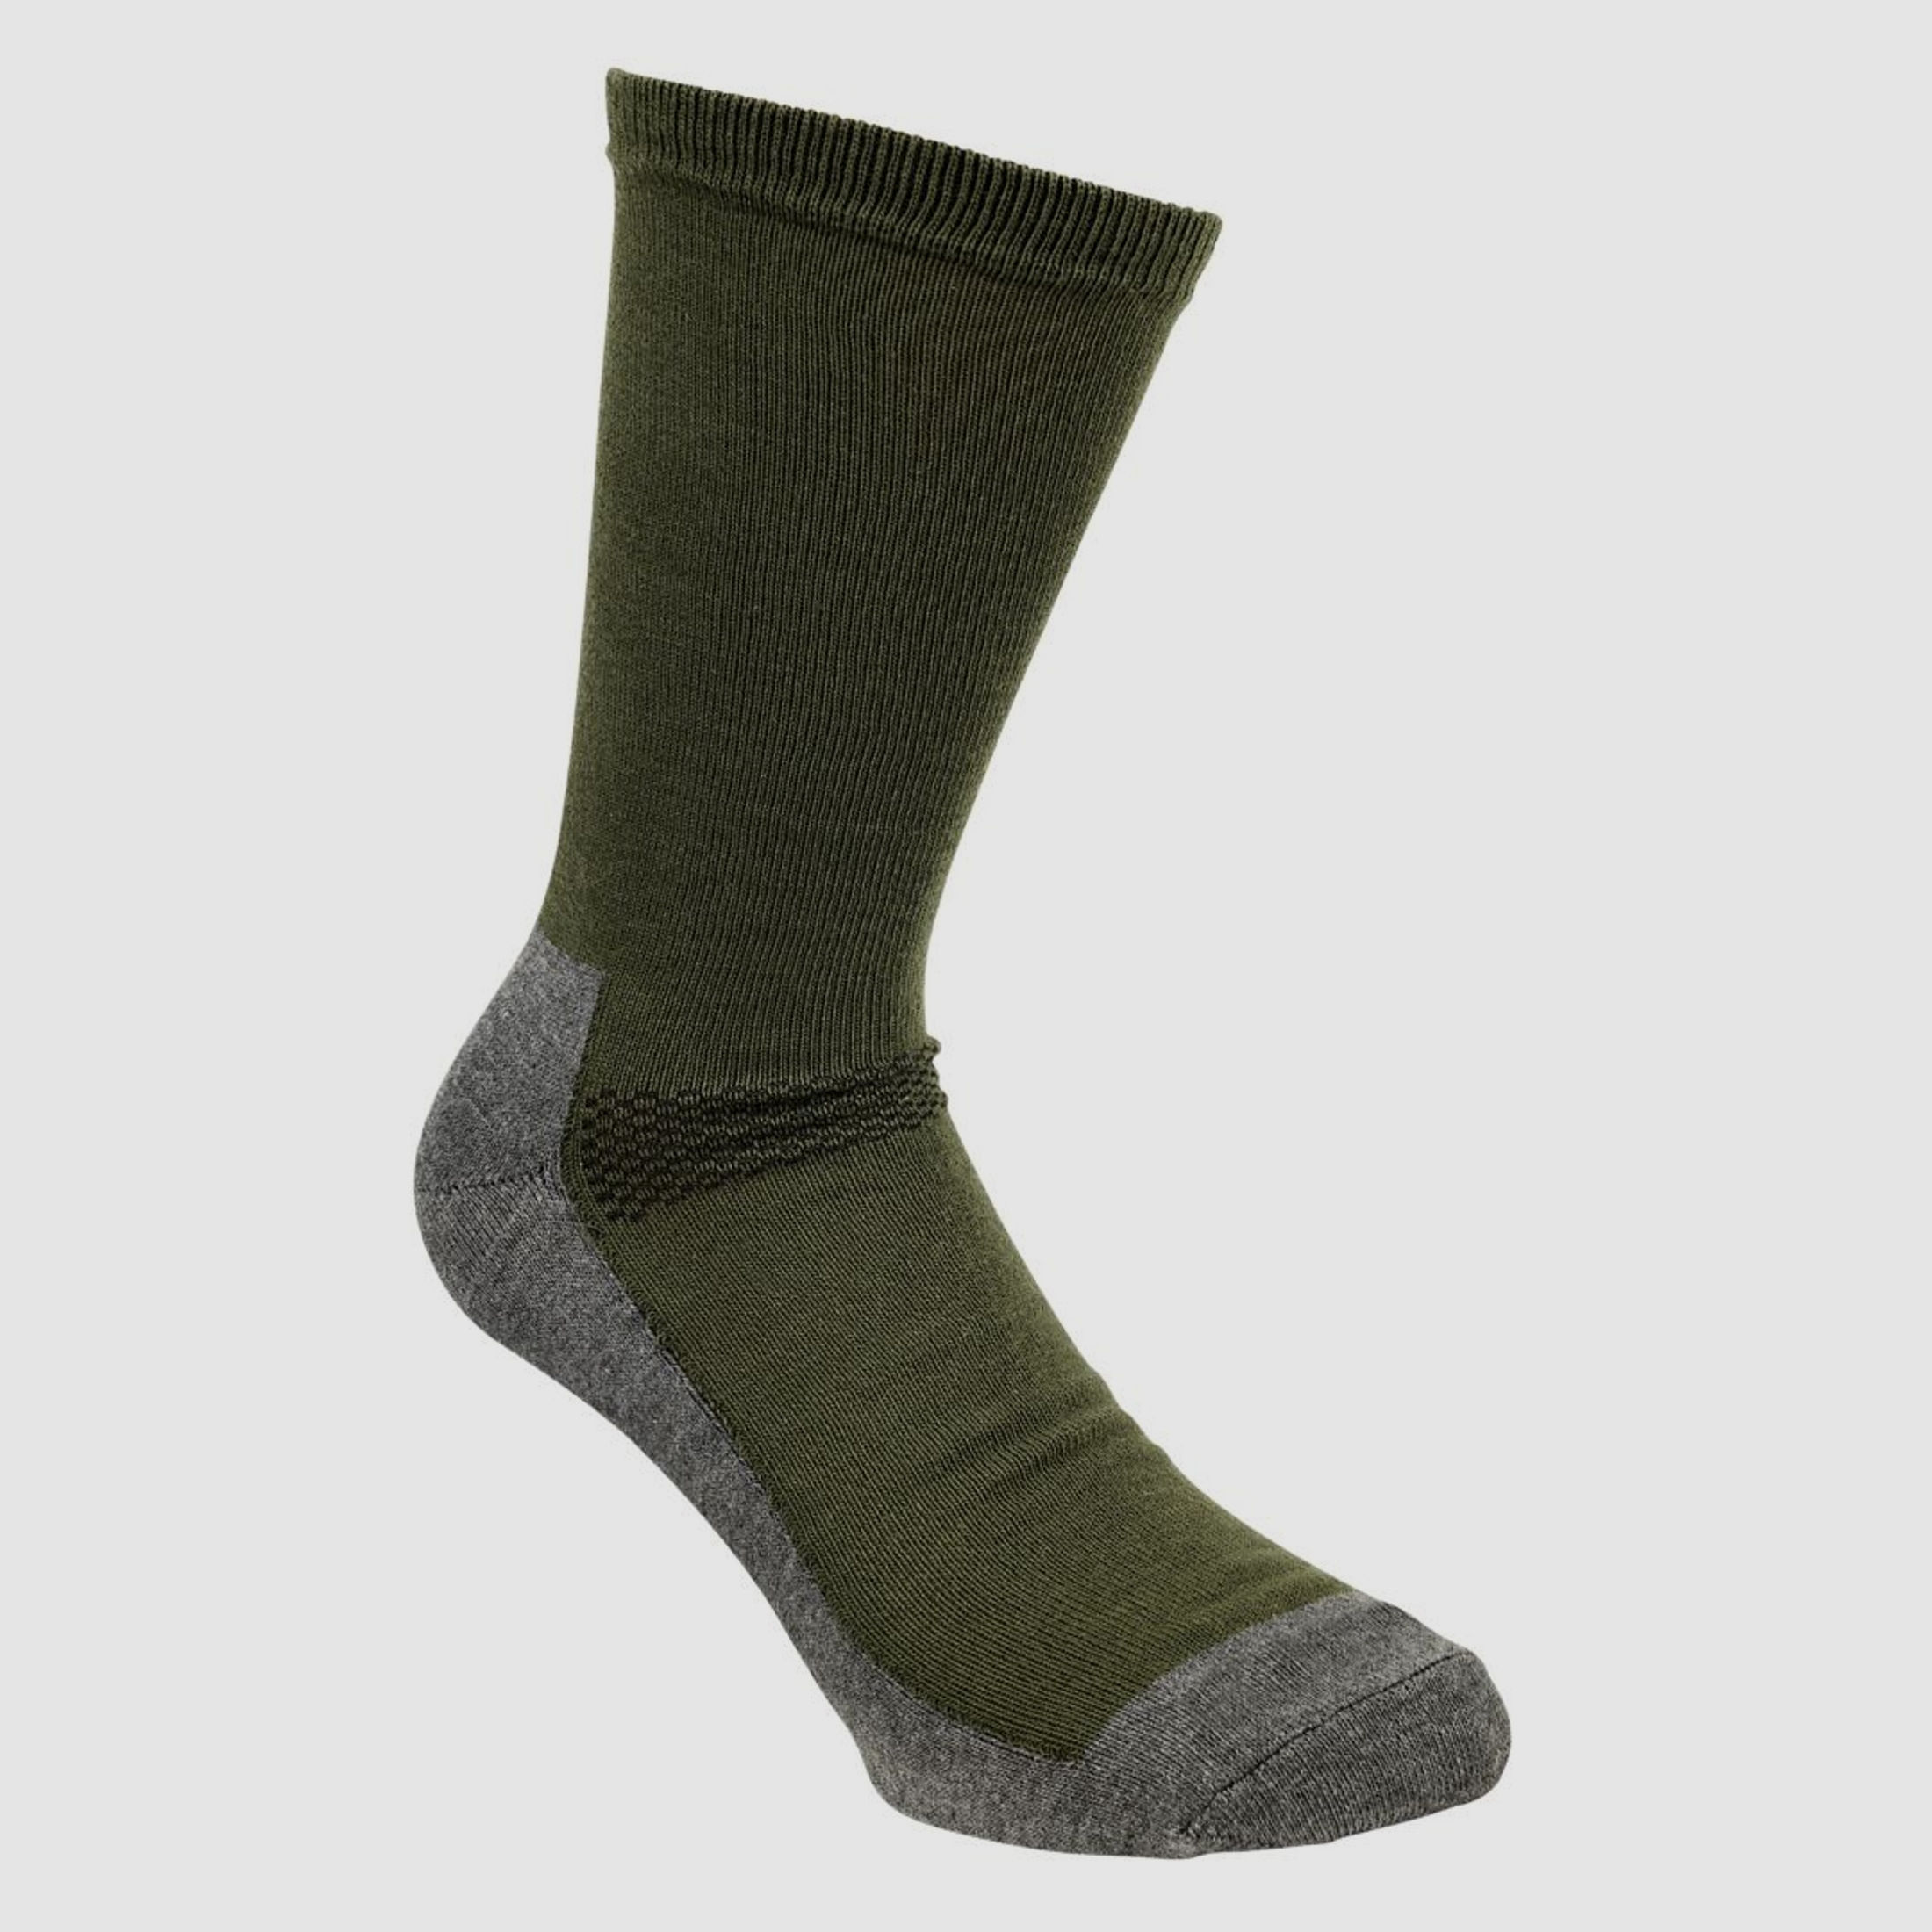 Pinewood Coolmax Socken Farbe: Grün, Größe: 37-39